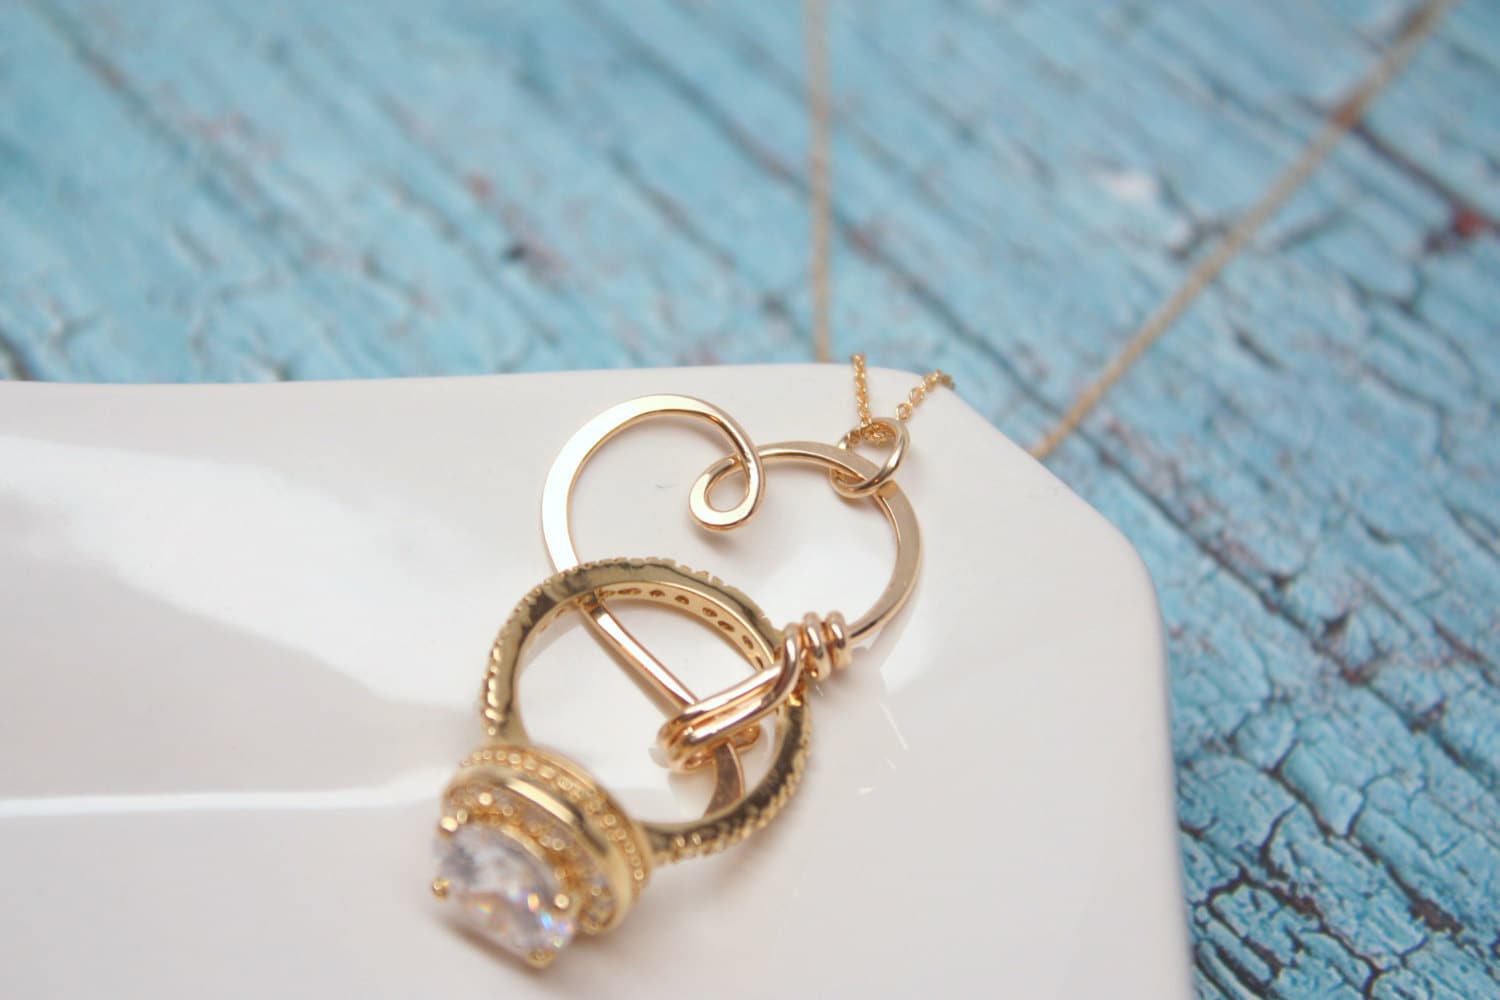  Ring  Holder  Necklace  Wedding  or Engagement  Ring  Holder 